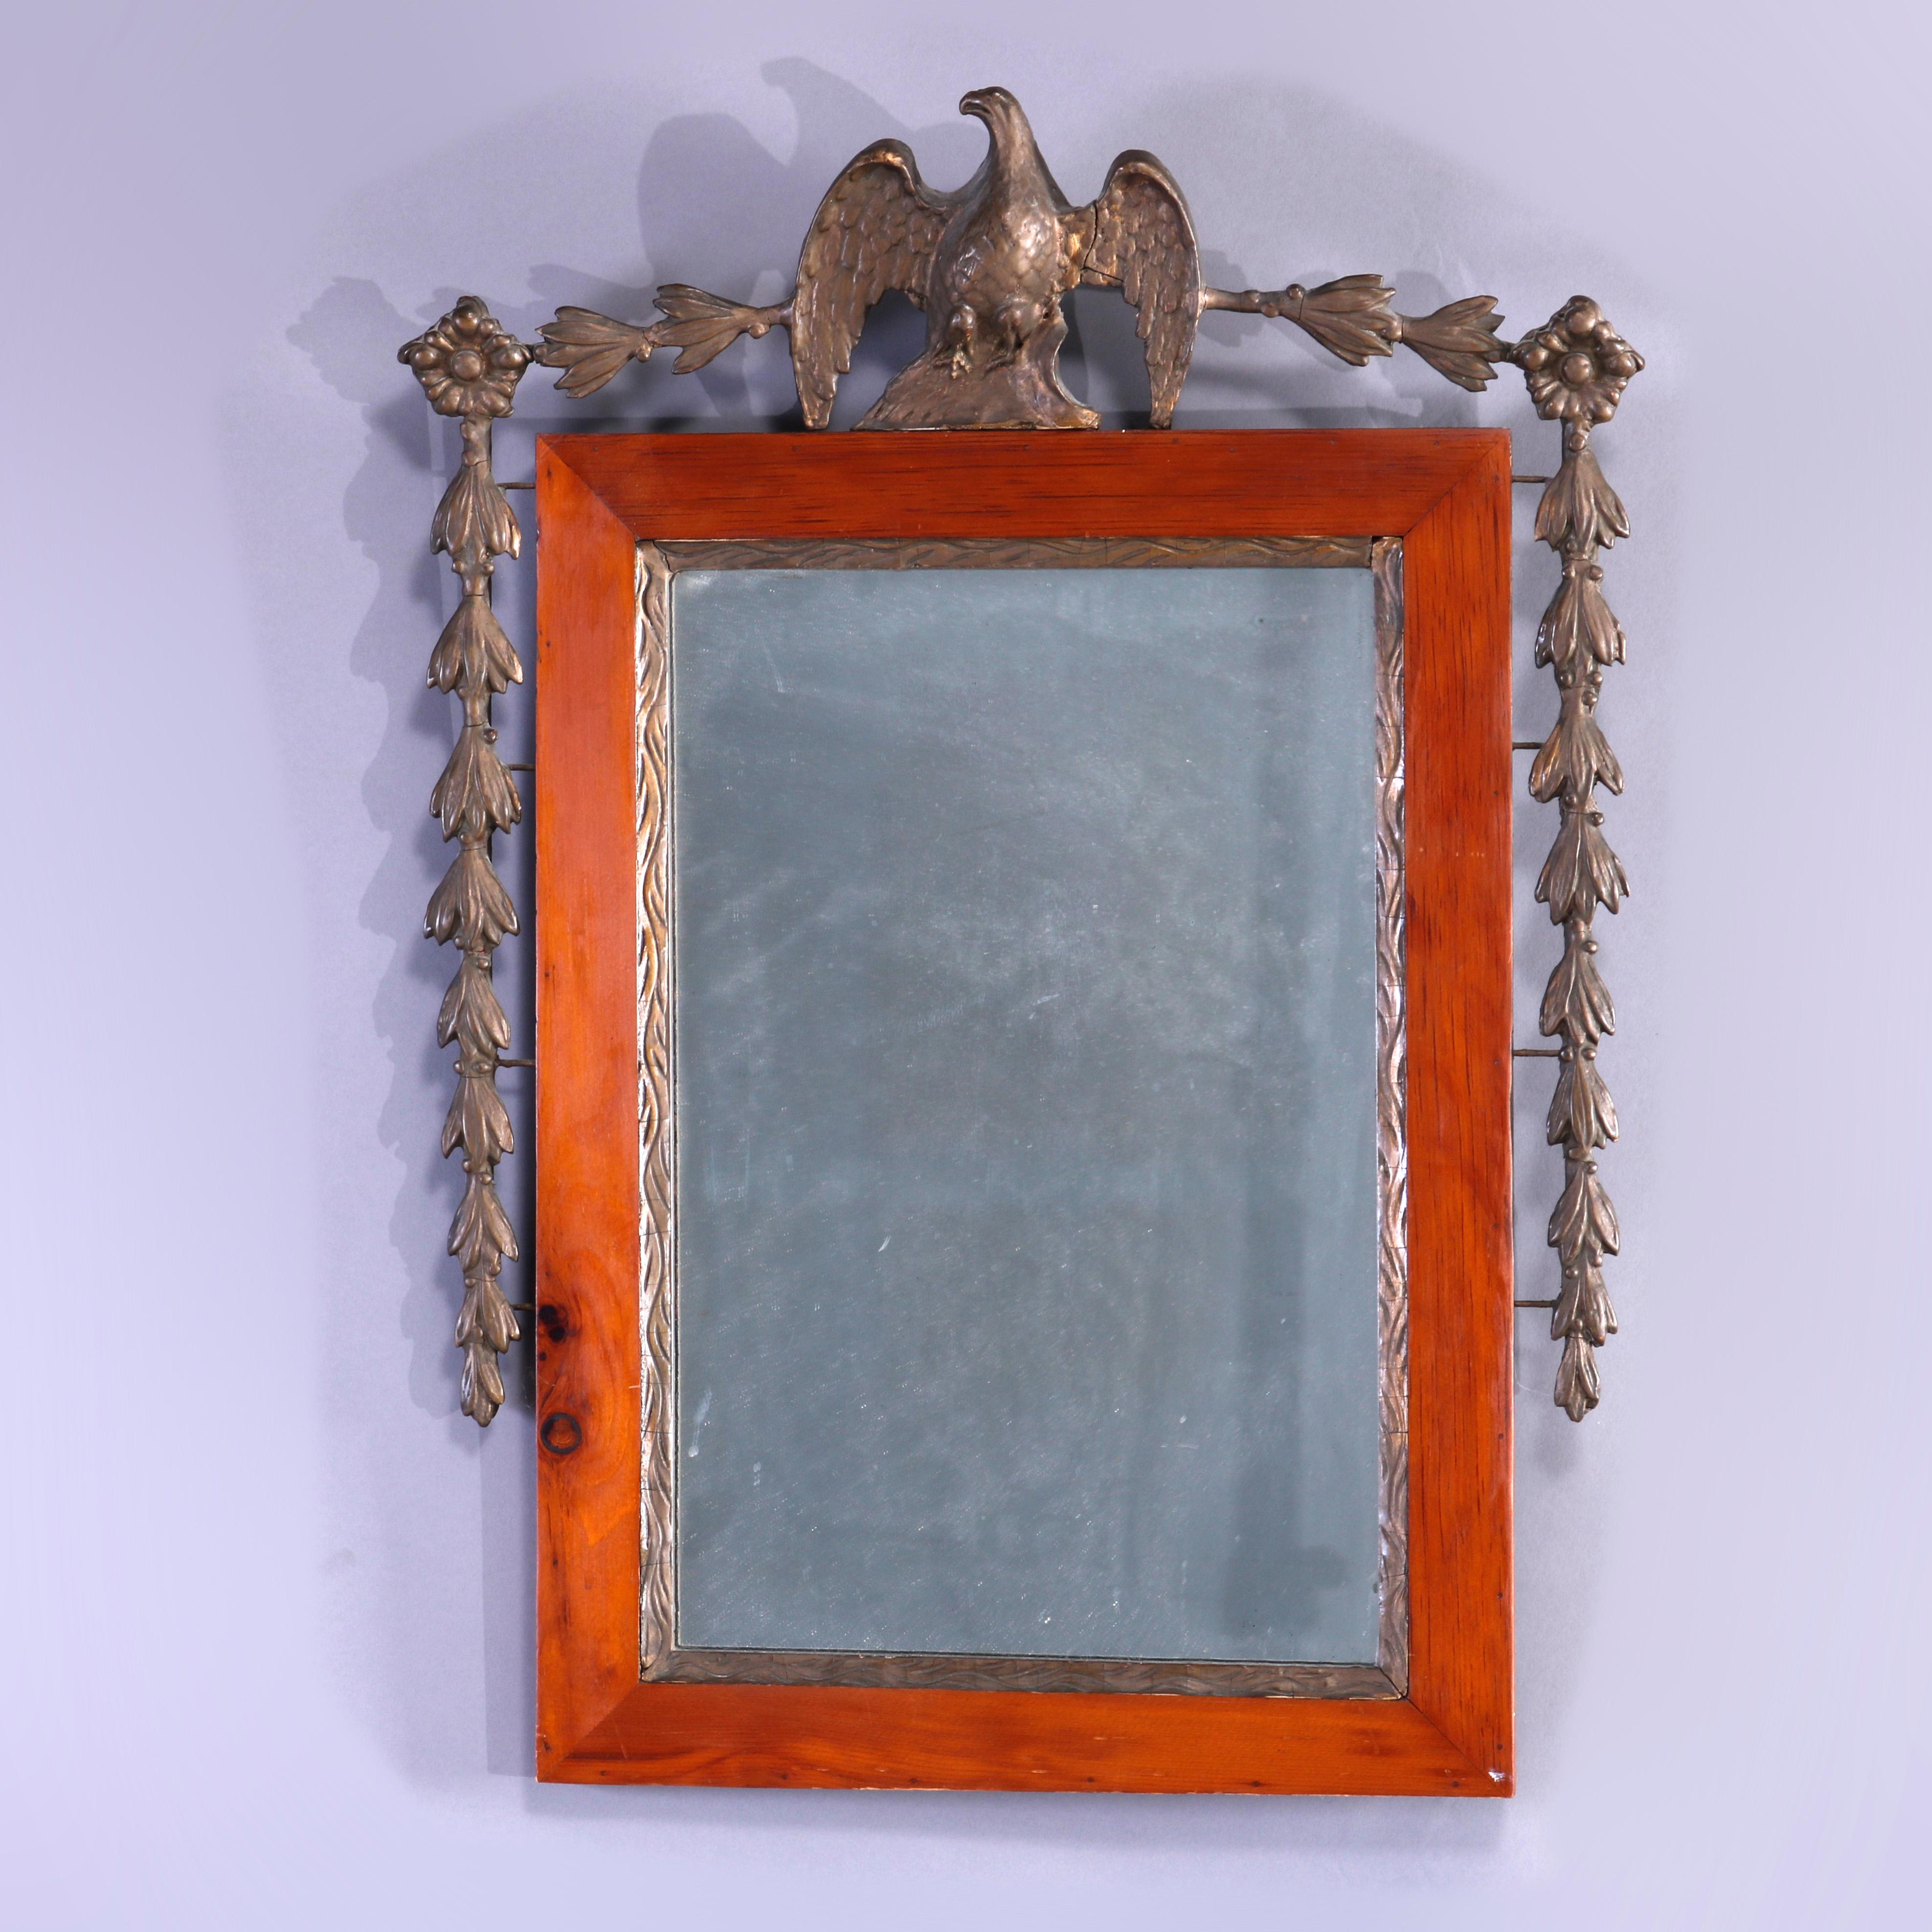 Ein antiker föderaler Wandspiegel bietet einen Rahmen mit einem figuralen vergoldeten Adler auf dem Scheitel und einer flankierenden umgekehrten Glockenblumengirlande, um 1840

Maße - 27''H x 19,5''W x 2,5''D.

Kataloghinweis: Erkundigen Sie sich